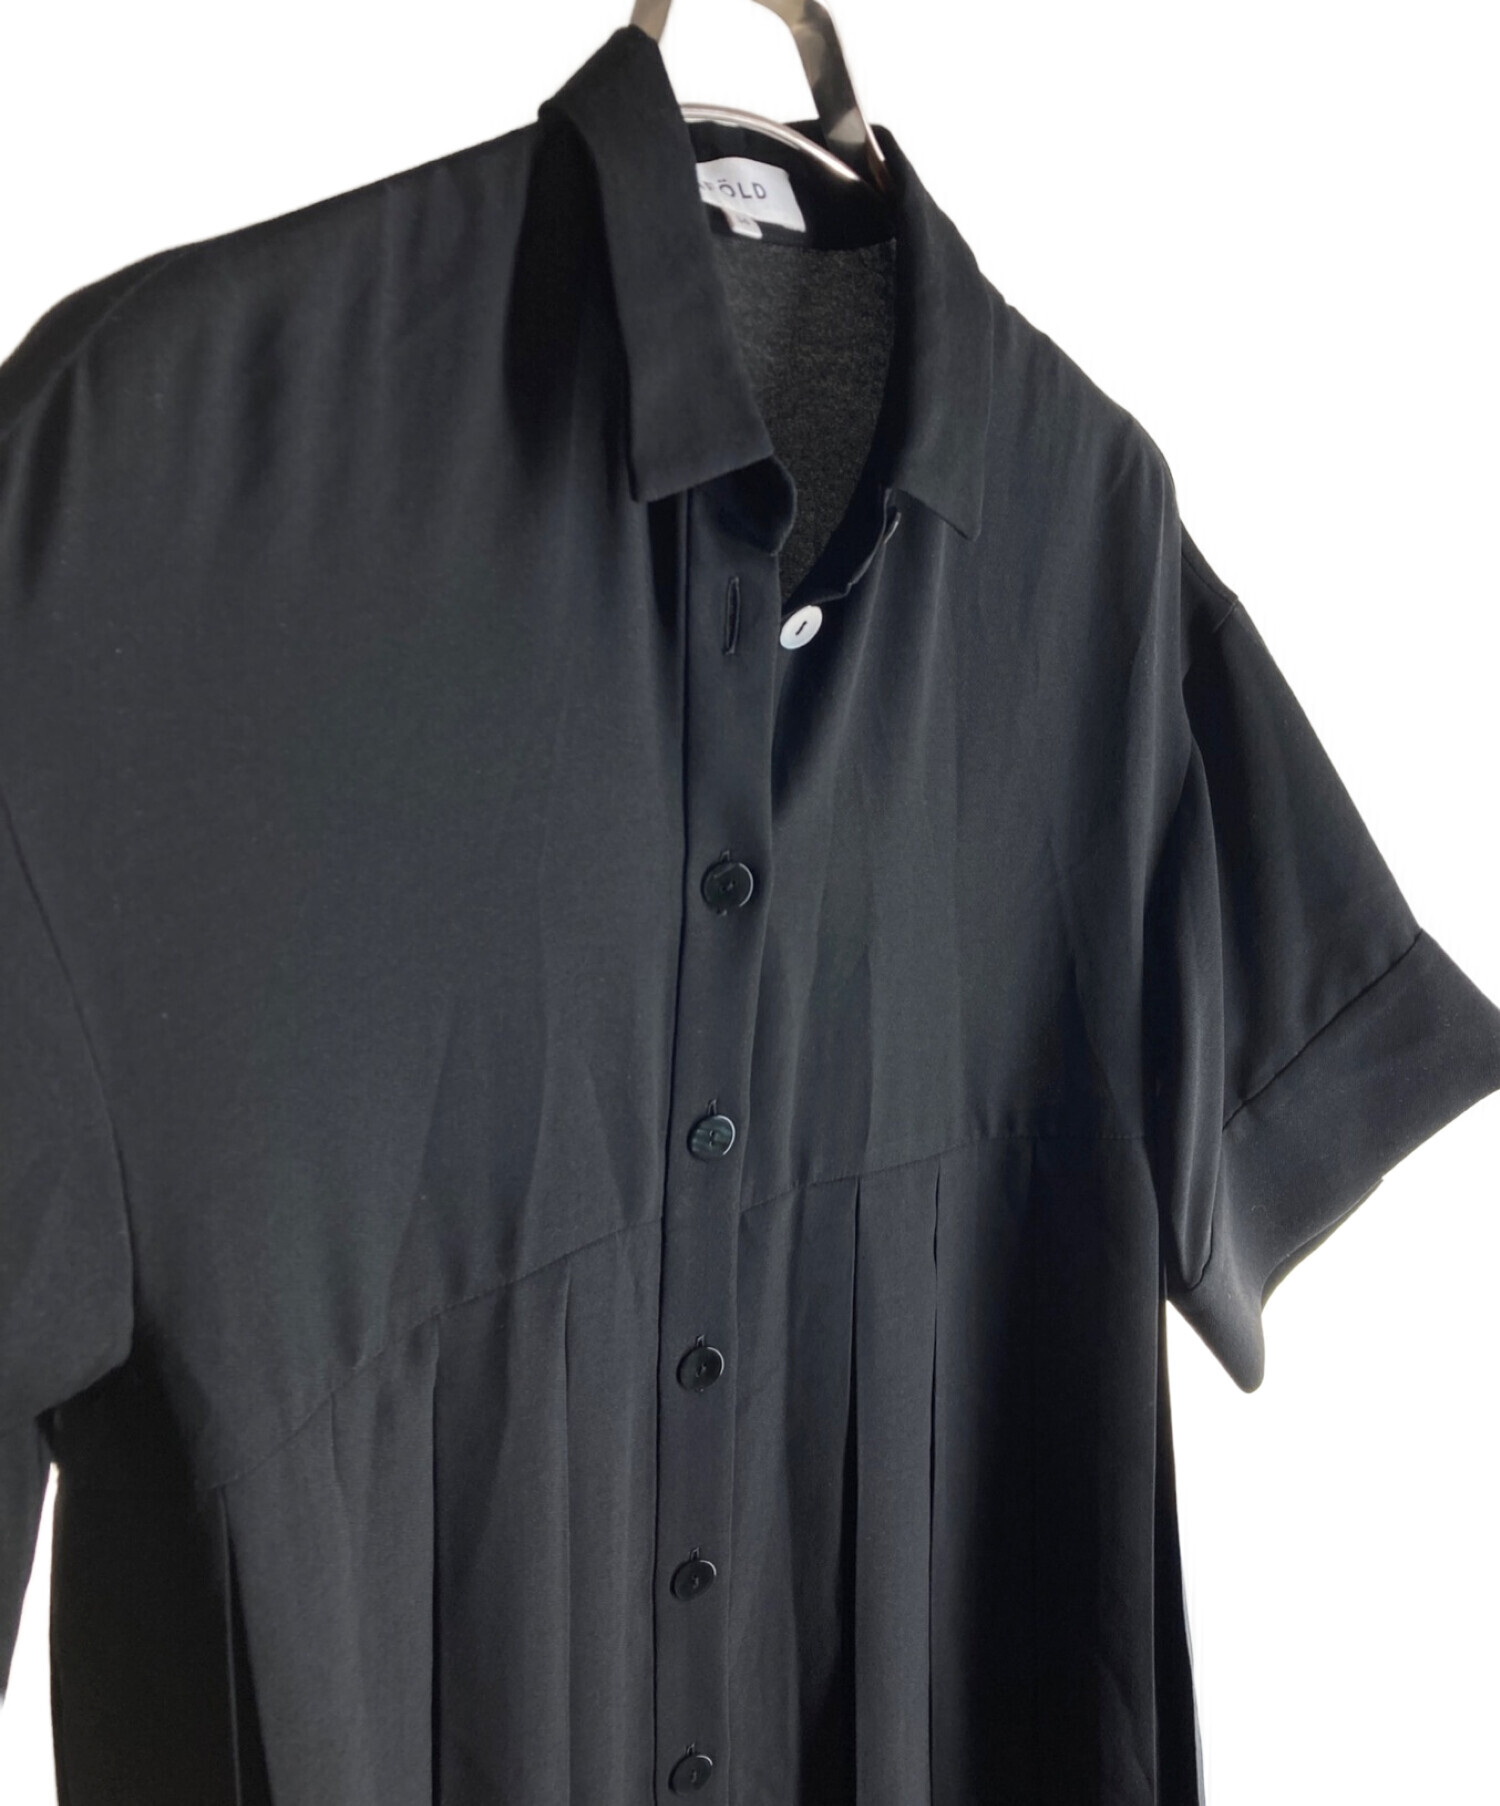 ENFOLD (エンフォルド) PE ジョーゼット プリーツ 5分袖 DRESS ブラック サイズ:36